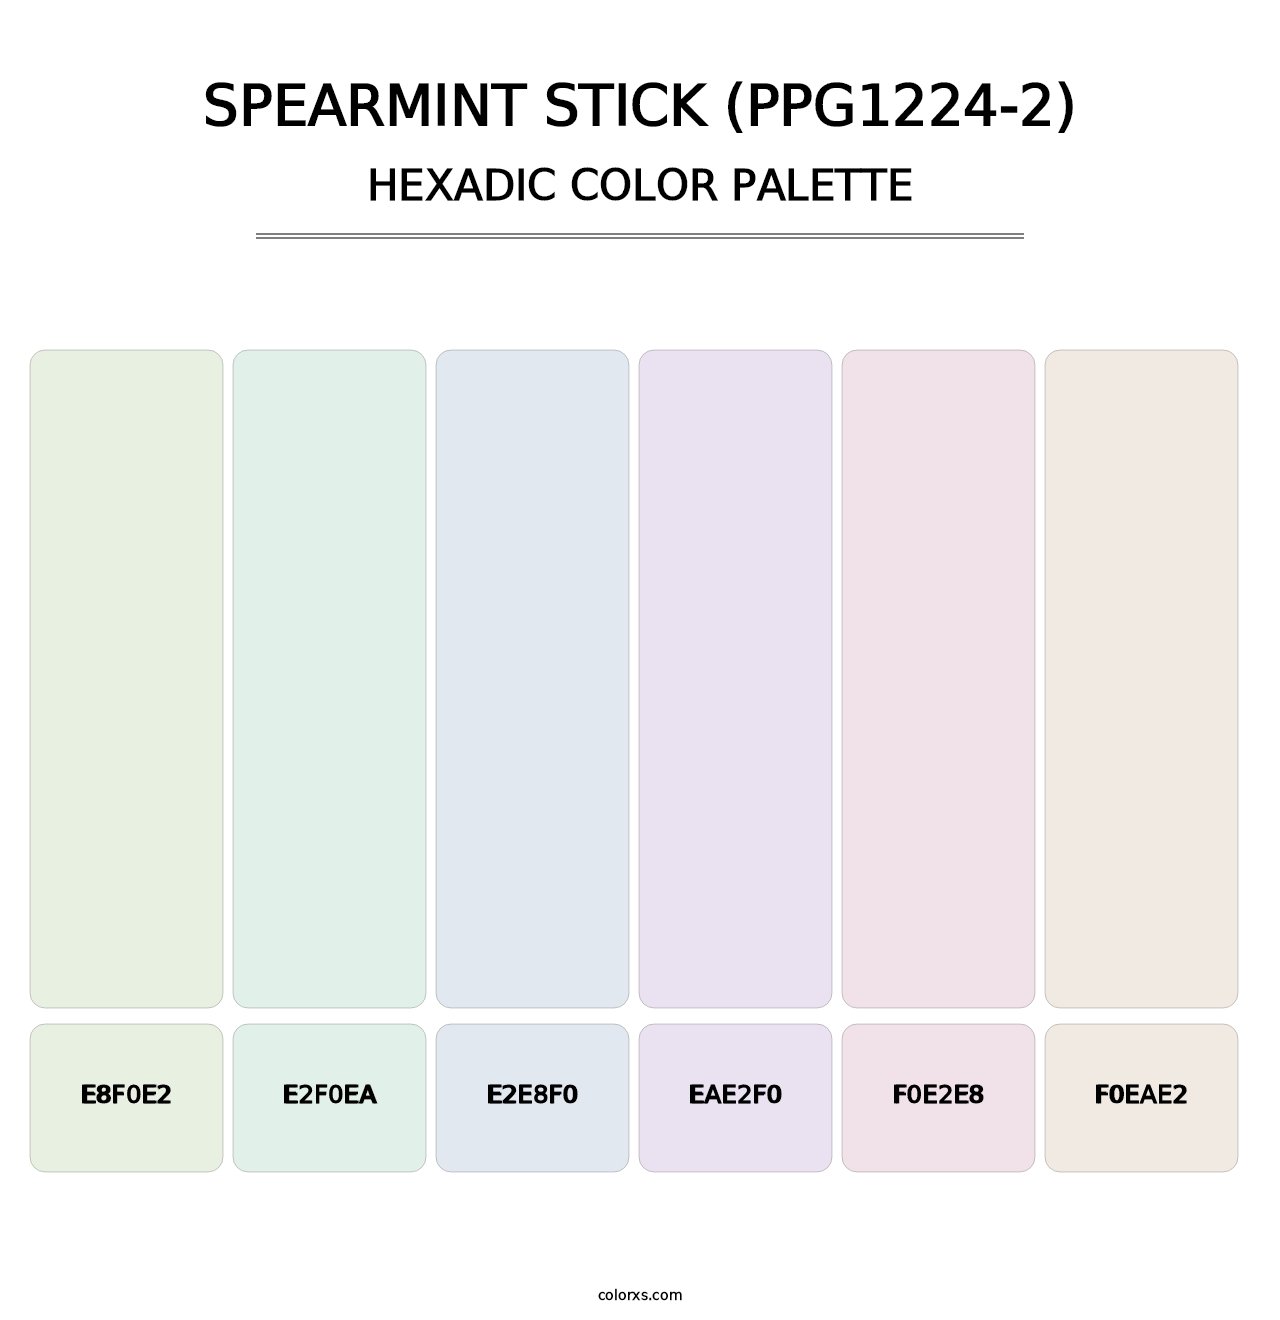 Spearmint Stick (PPG1224-2) - Hexadic Color Palette